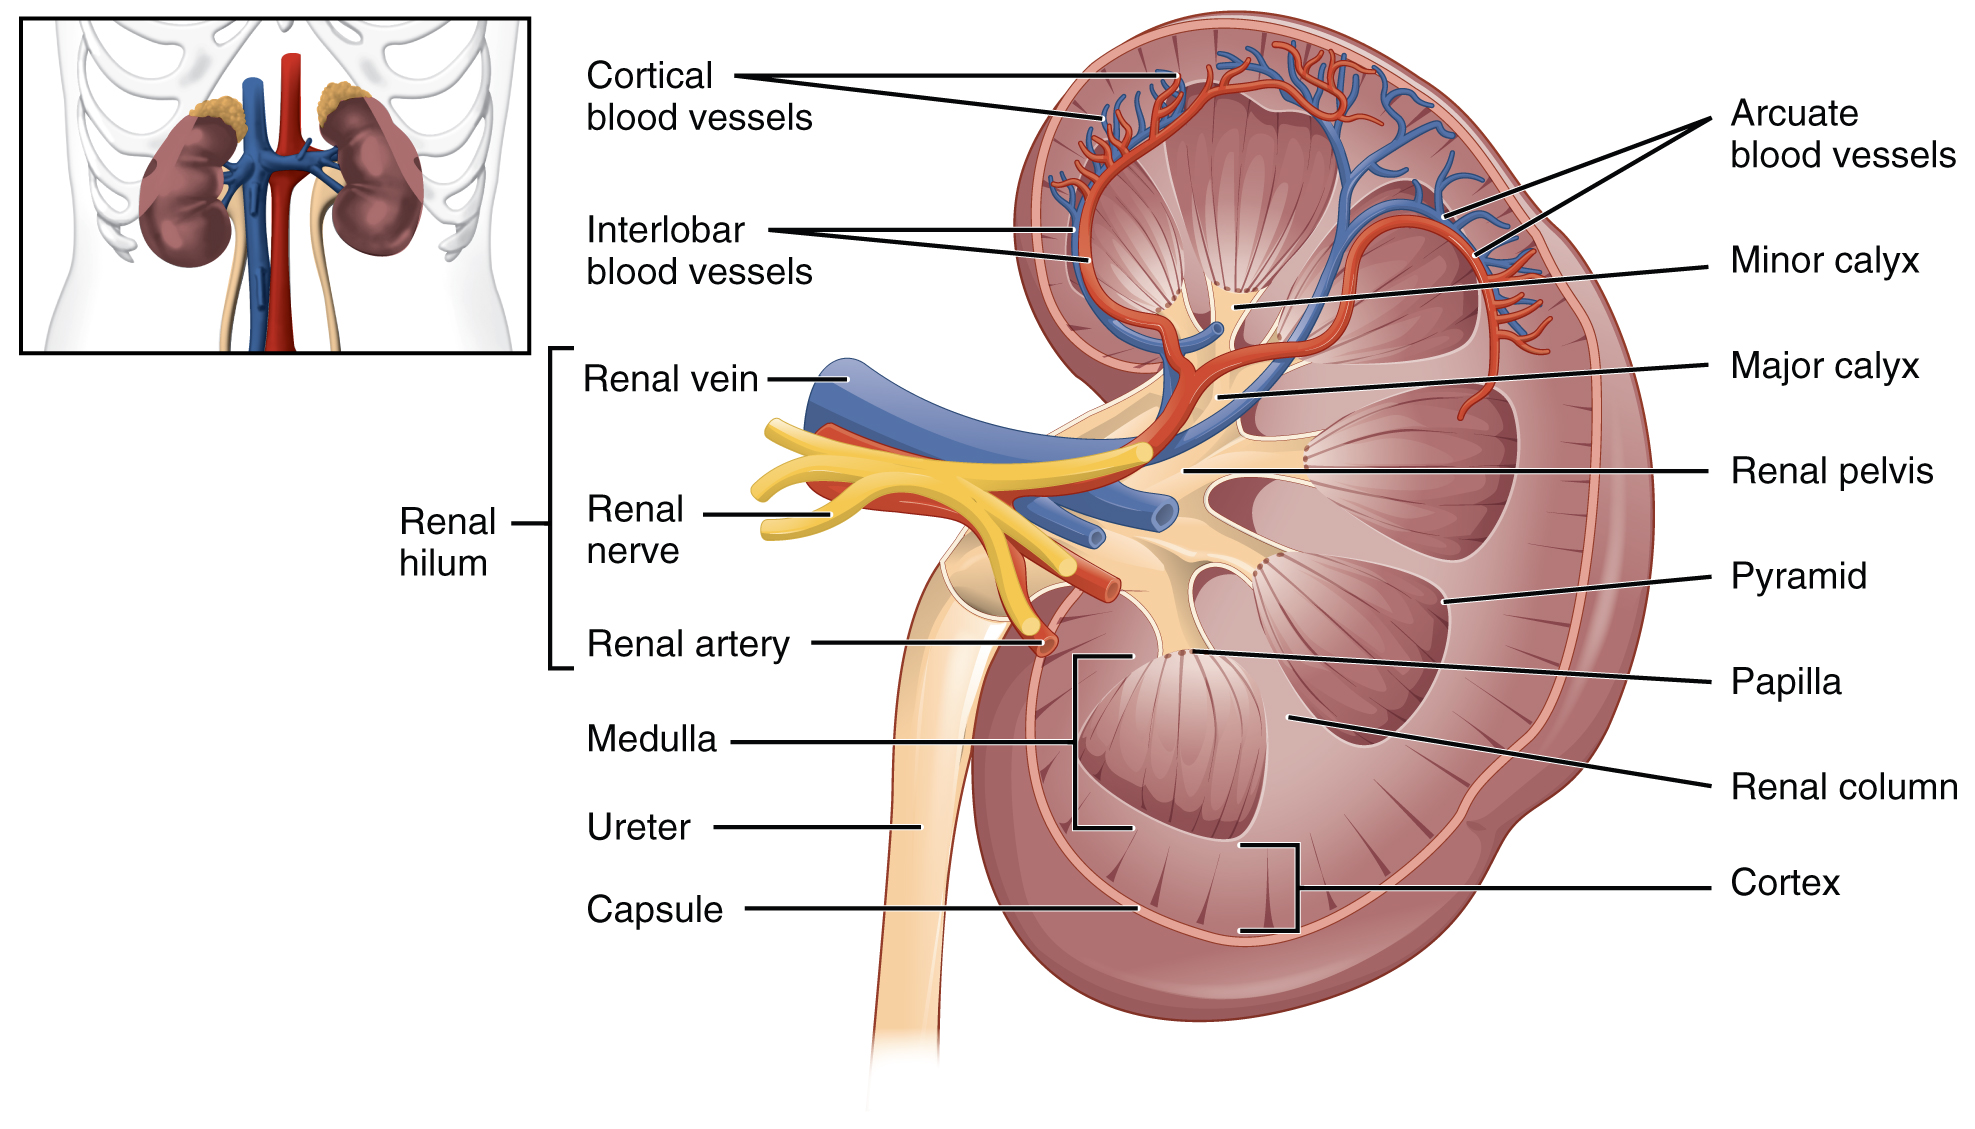 Left kidney diagram. Image description available.